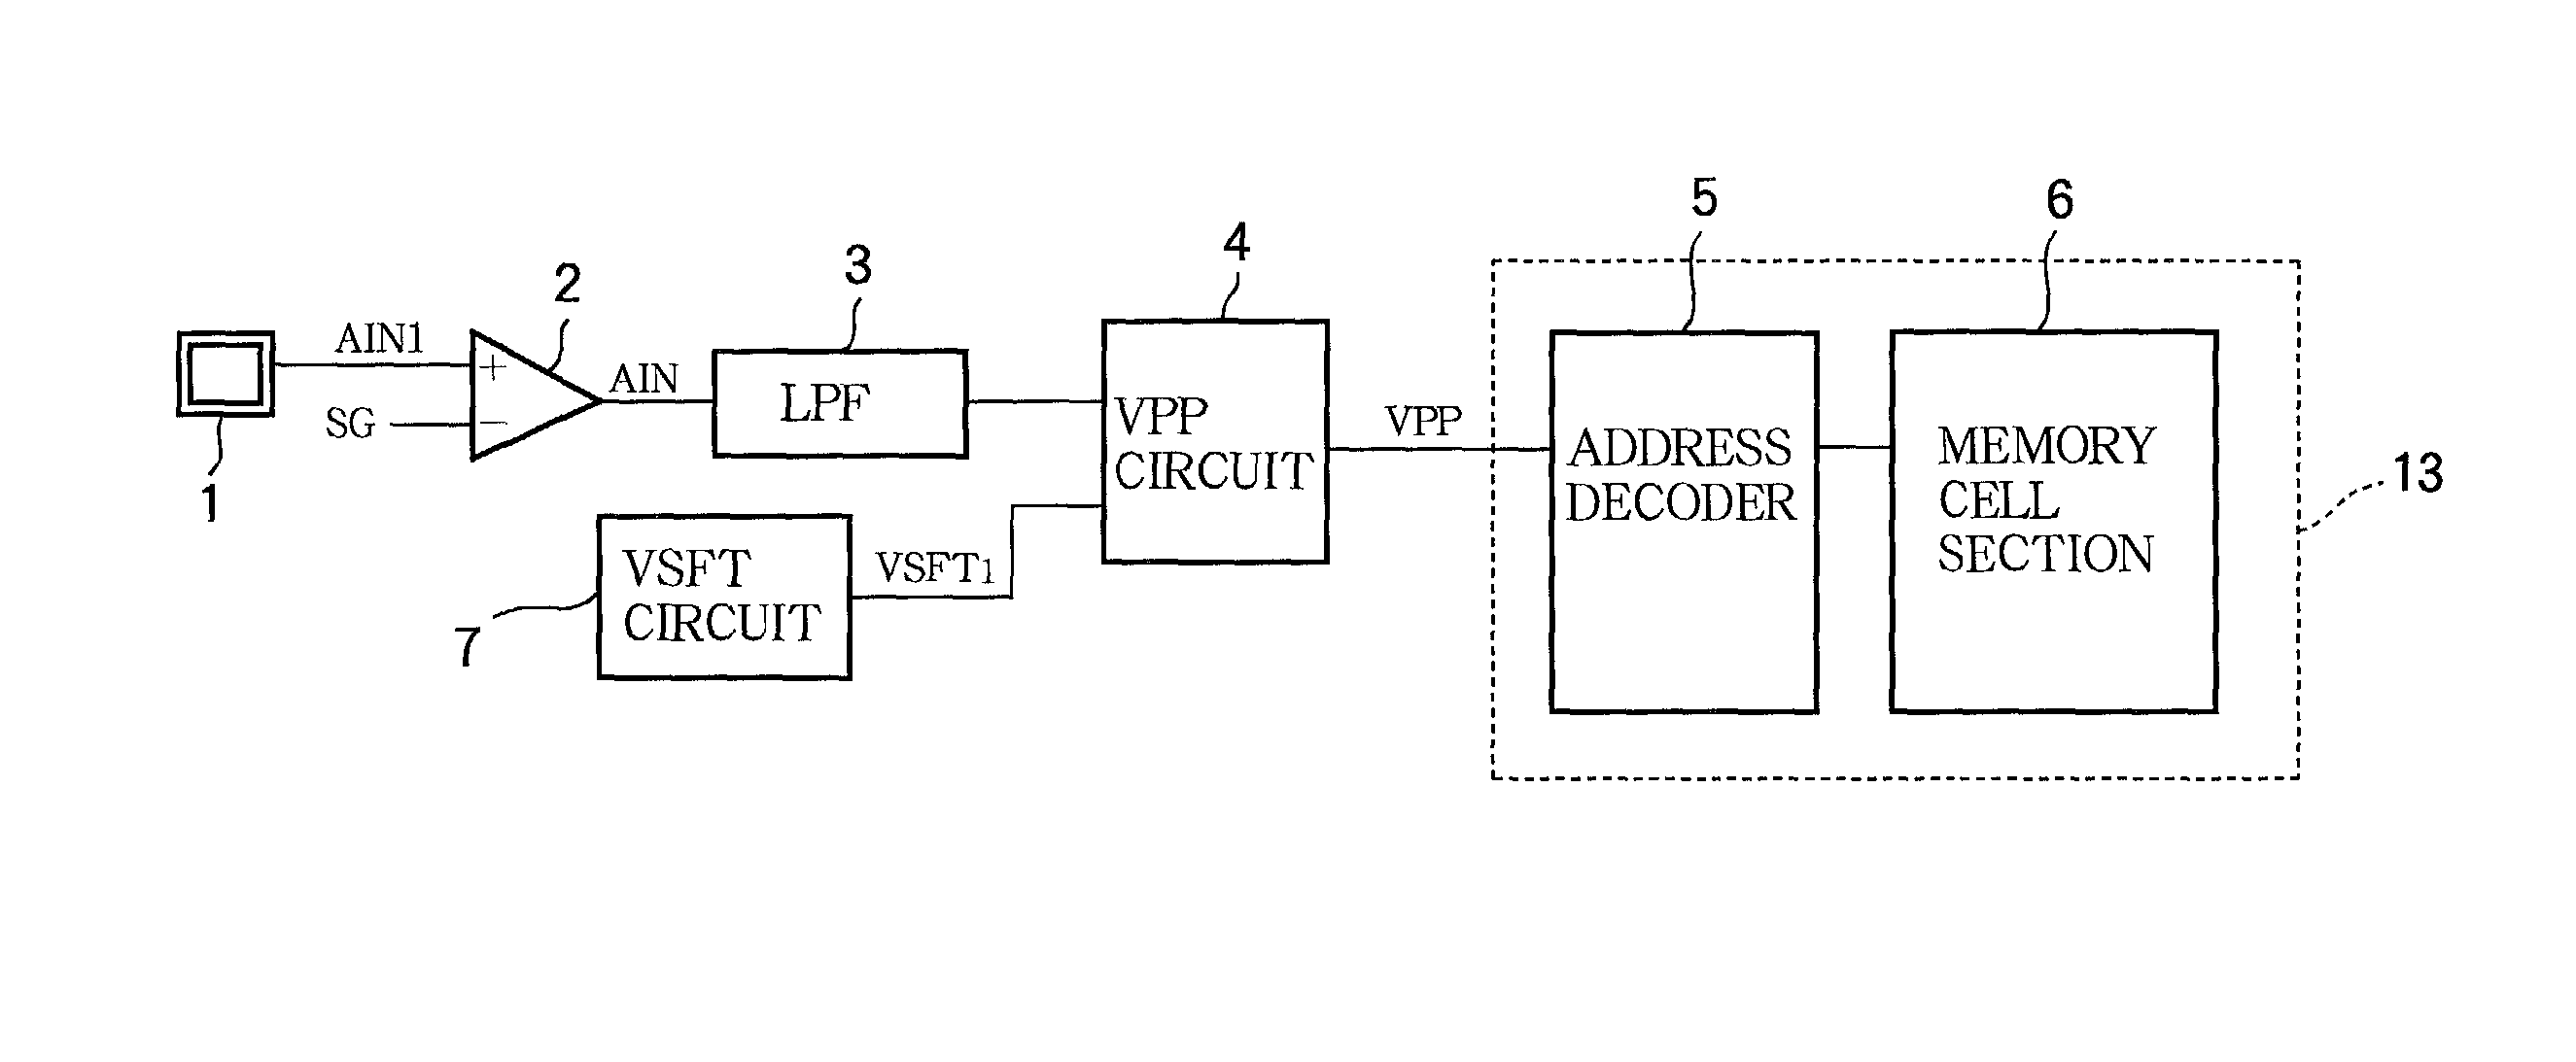 Redundant memory circuit for analog semiconductor memory